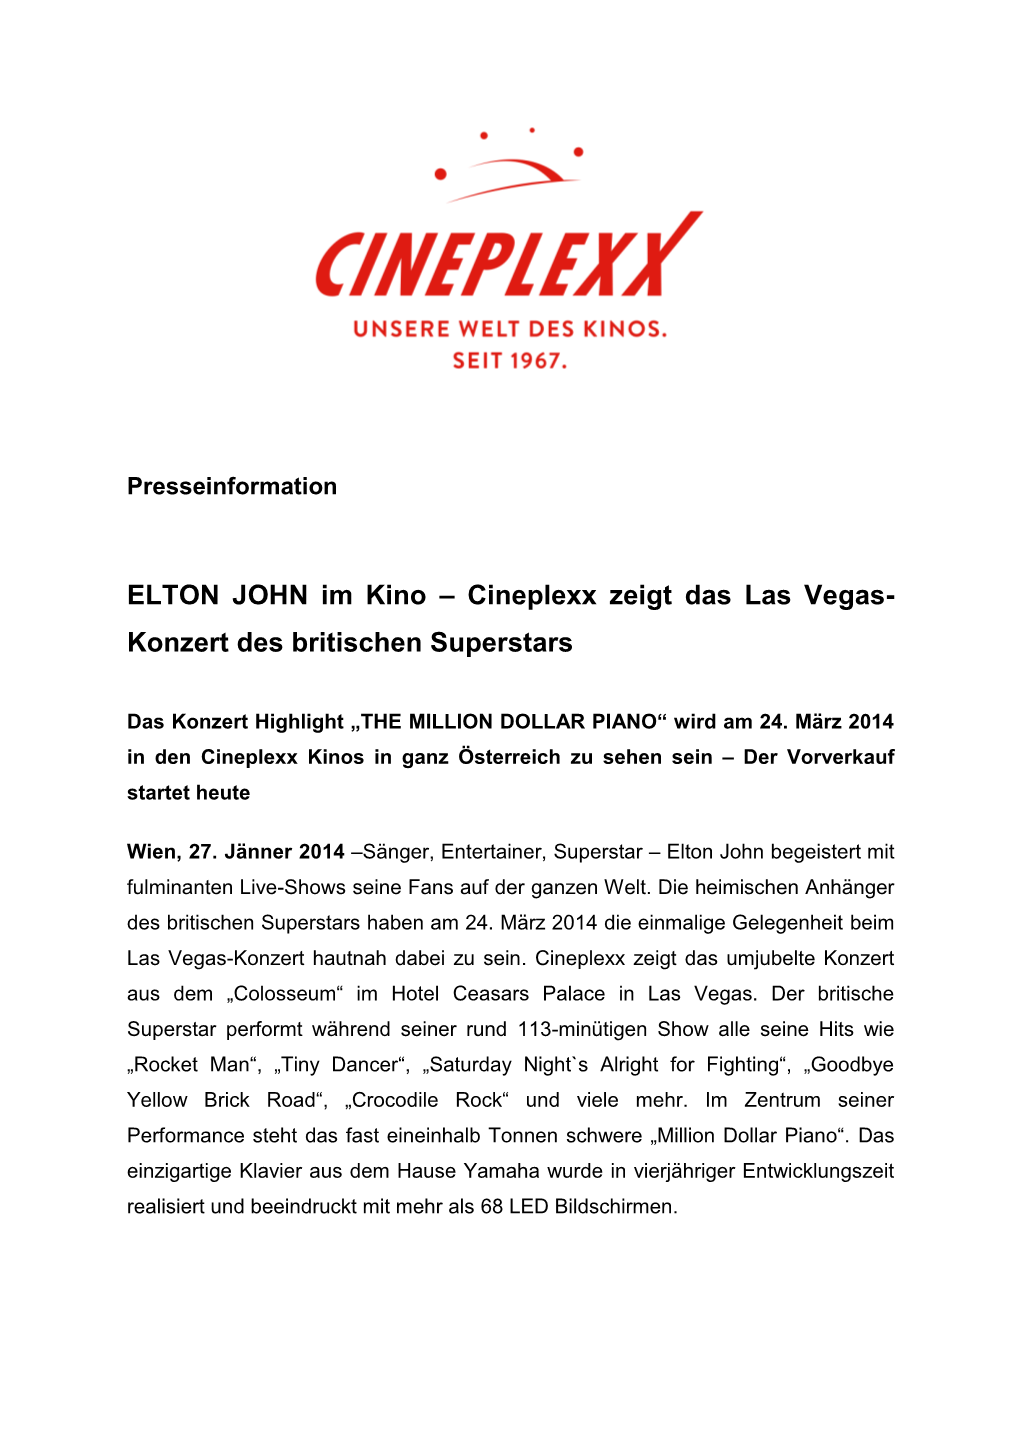 ELTON JOHN Im Kino – Cineplexx Zeigt Das Las Vegas- Konzert Des Britischen Superstars